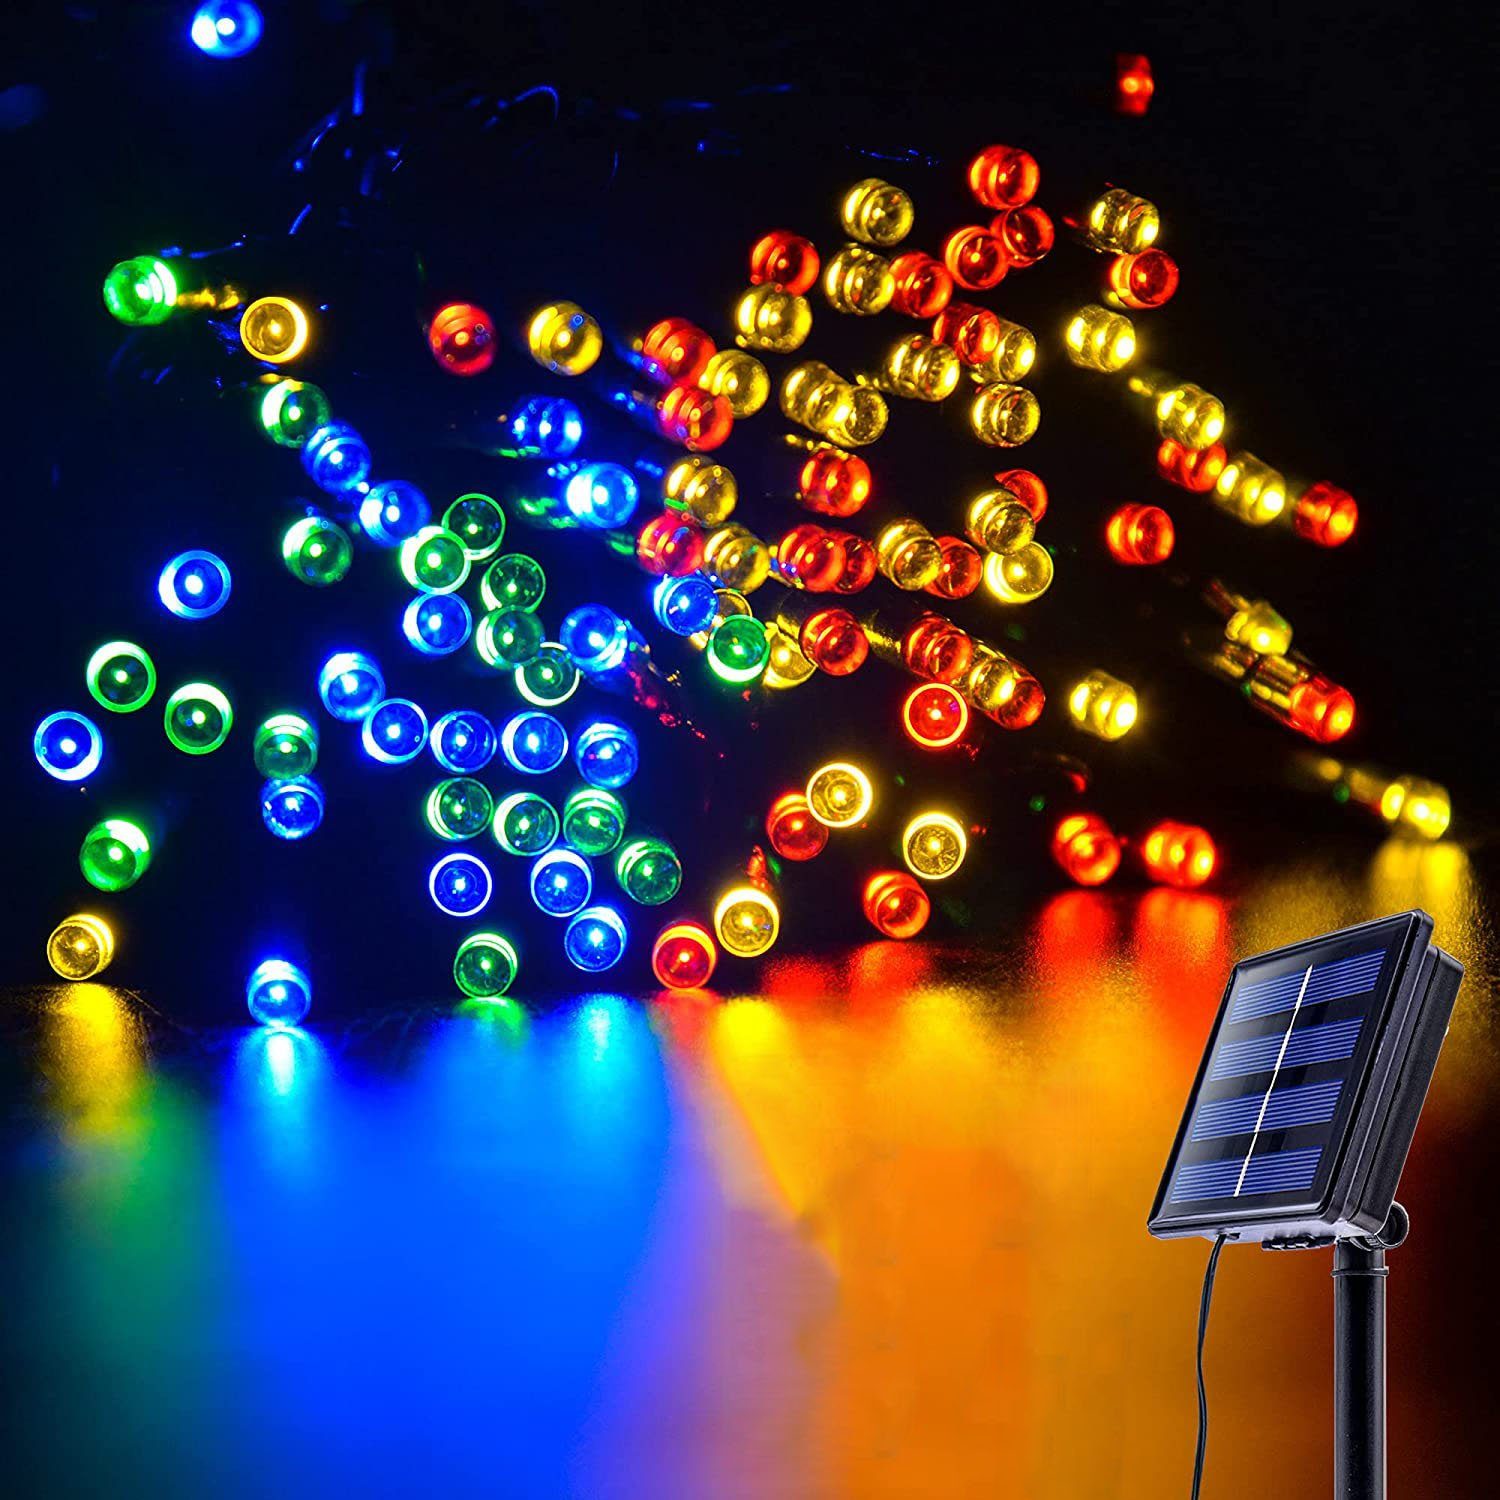 Oneid LED-Lichterkette Solar Lichterkette Aussen,12M 100 LED Lichterkette Außen 8 Modi